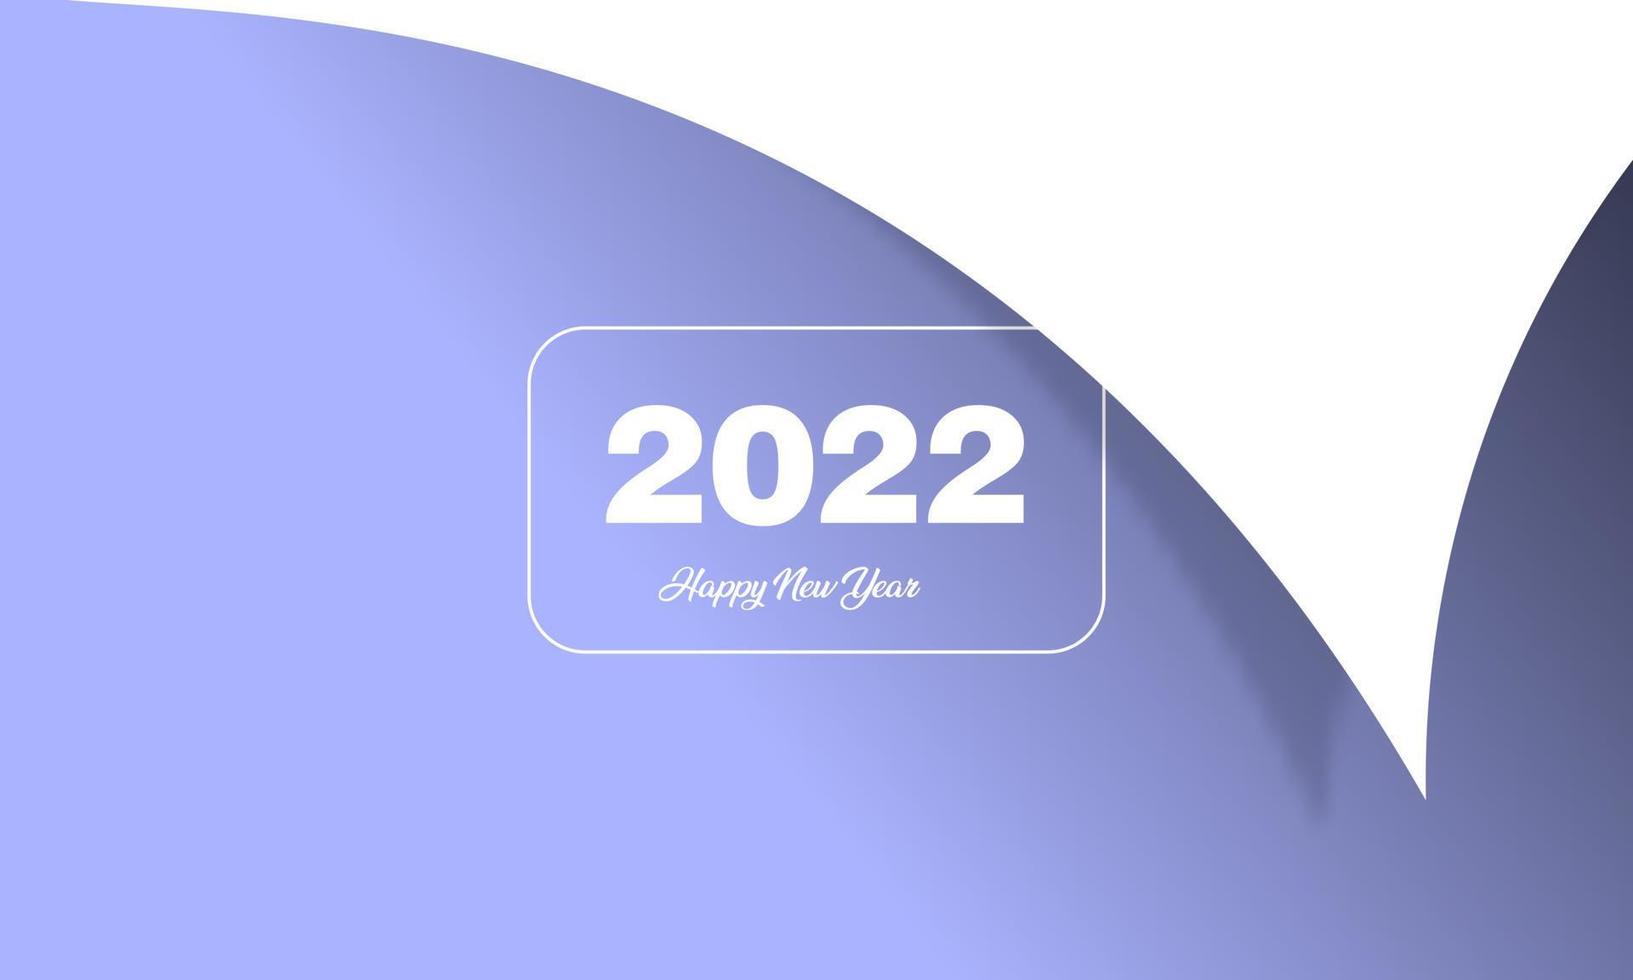 2022frohes neues Jahr schwarzes und farbenfrohes Werbeplakat oder Banner mit offenem Geschenkpapier. Ändern oder öffnen Sie das Konzept des neuen Jahres 2022 mit eleganten Farben vektor